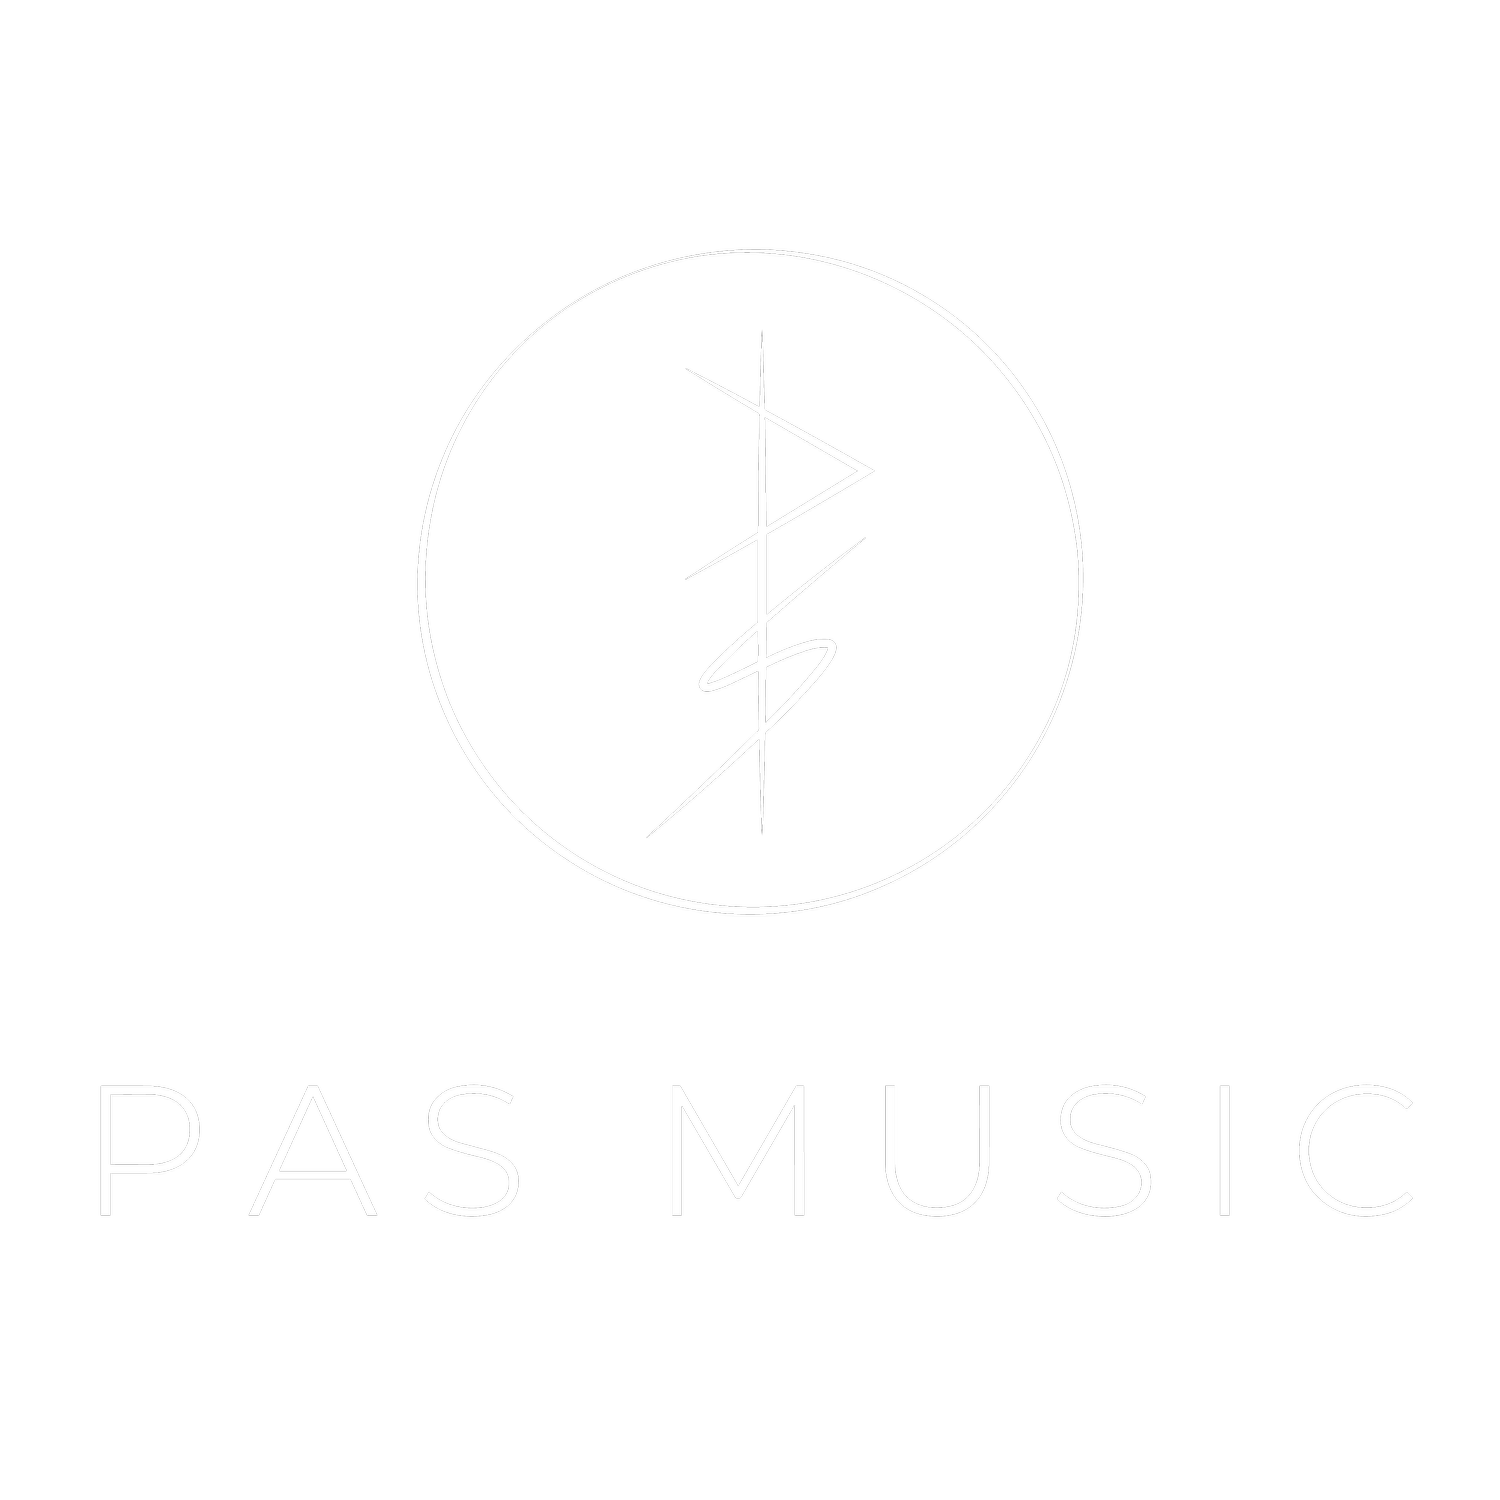 PAS MUSIC